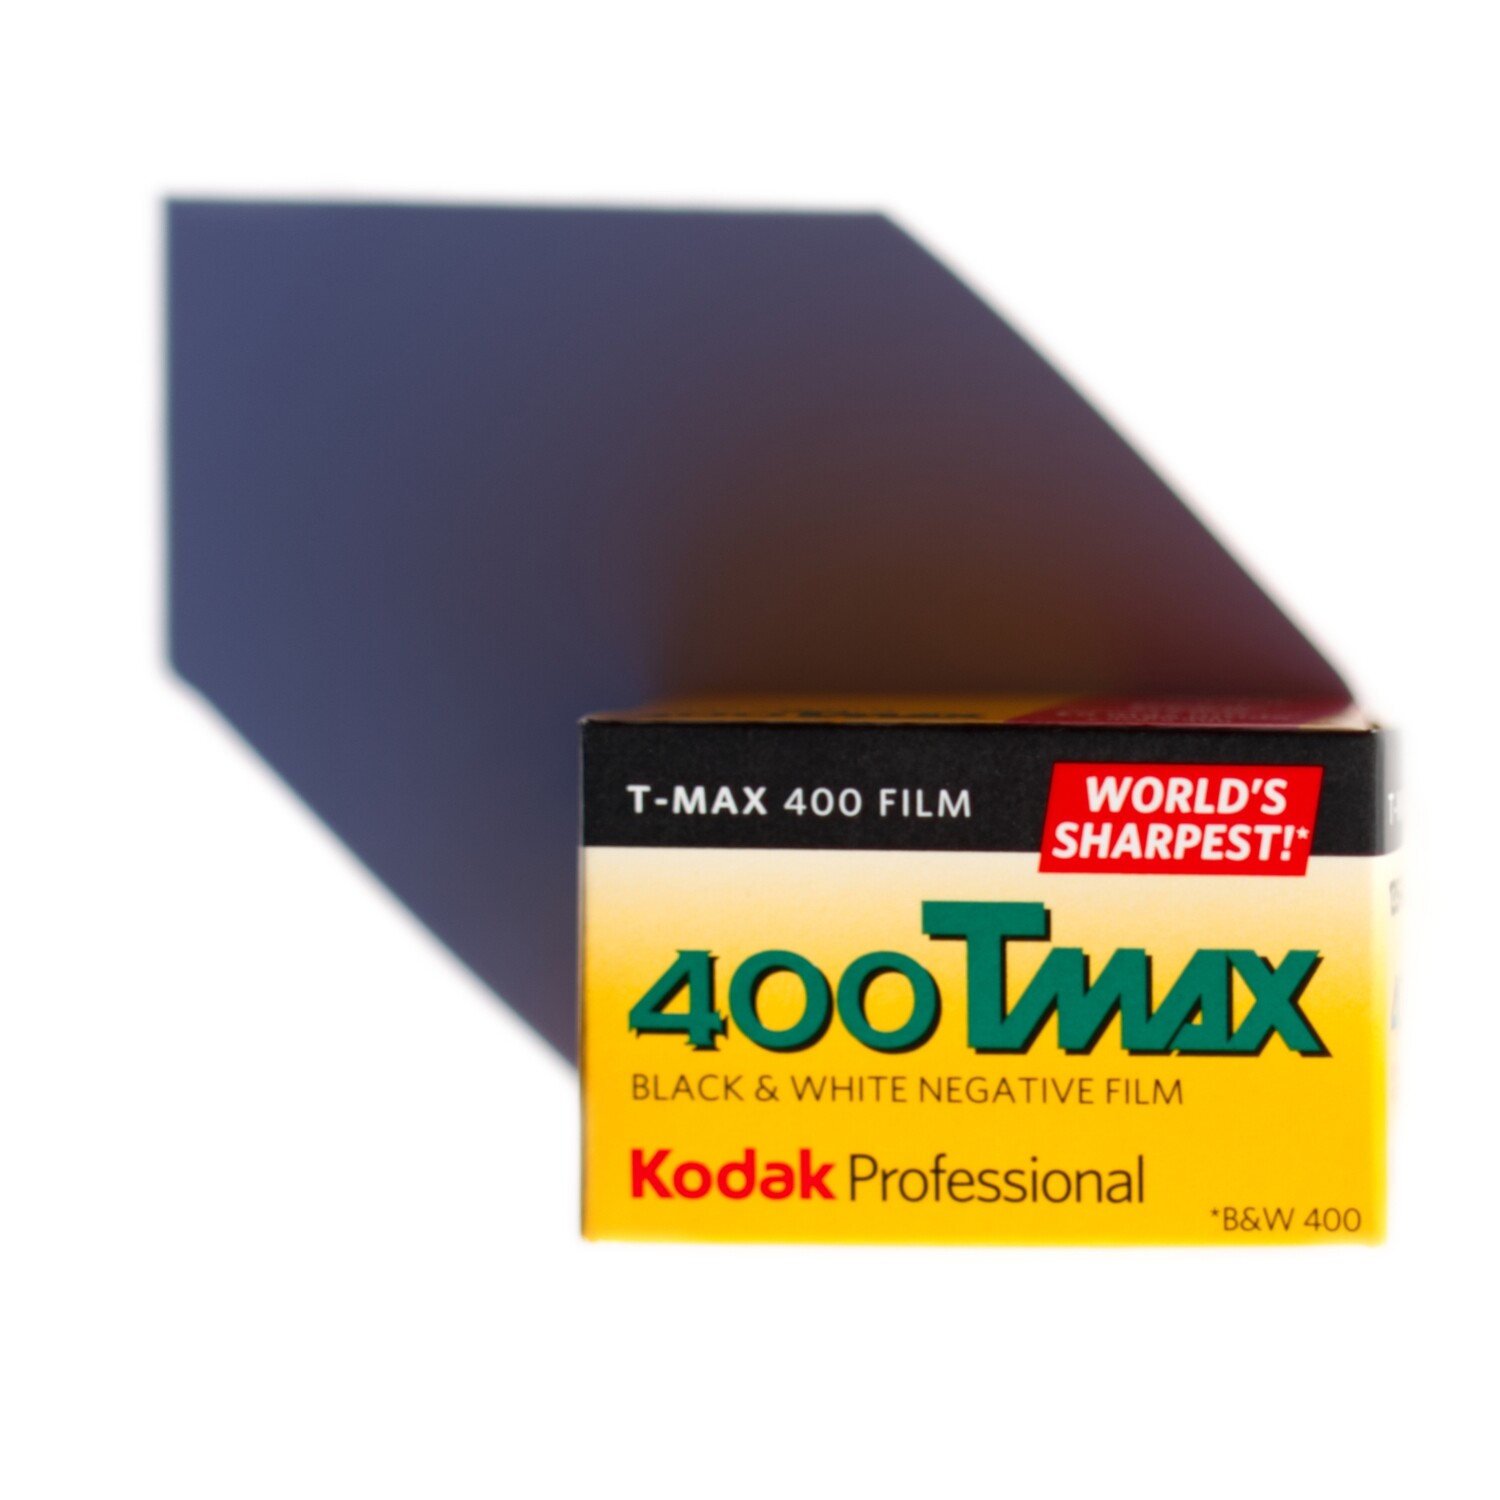 Kodak Professional T-MAX 400 35mm